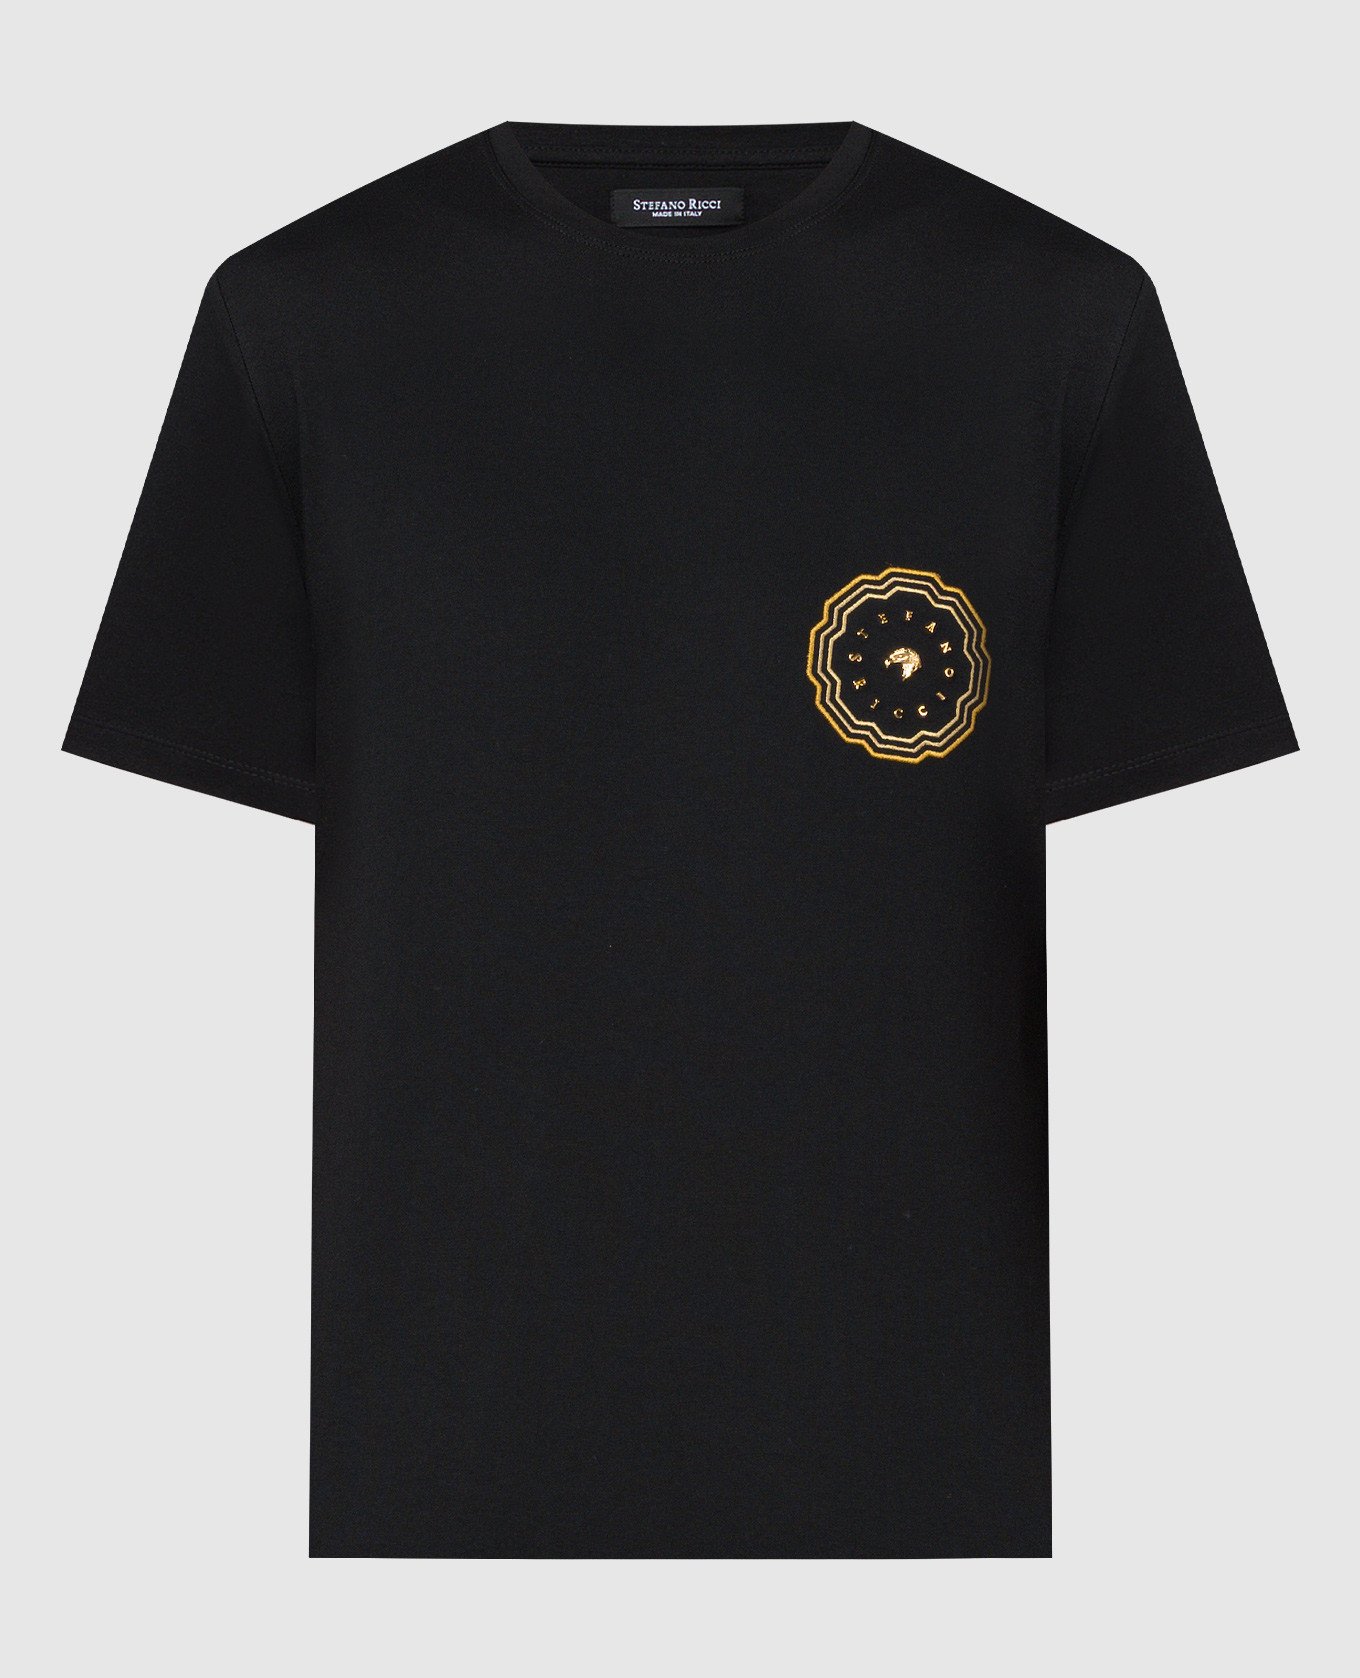 Black t-shirt with metallic logo